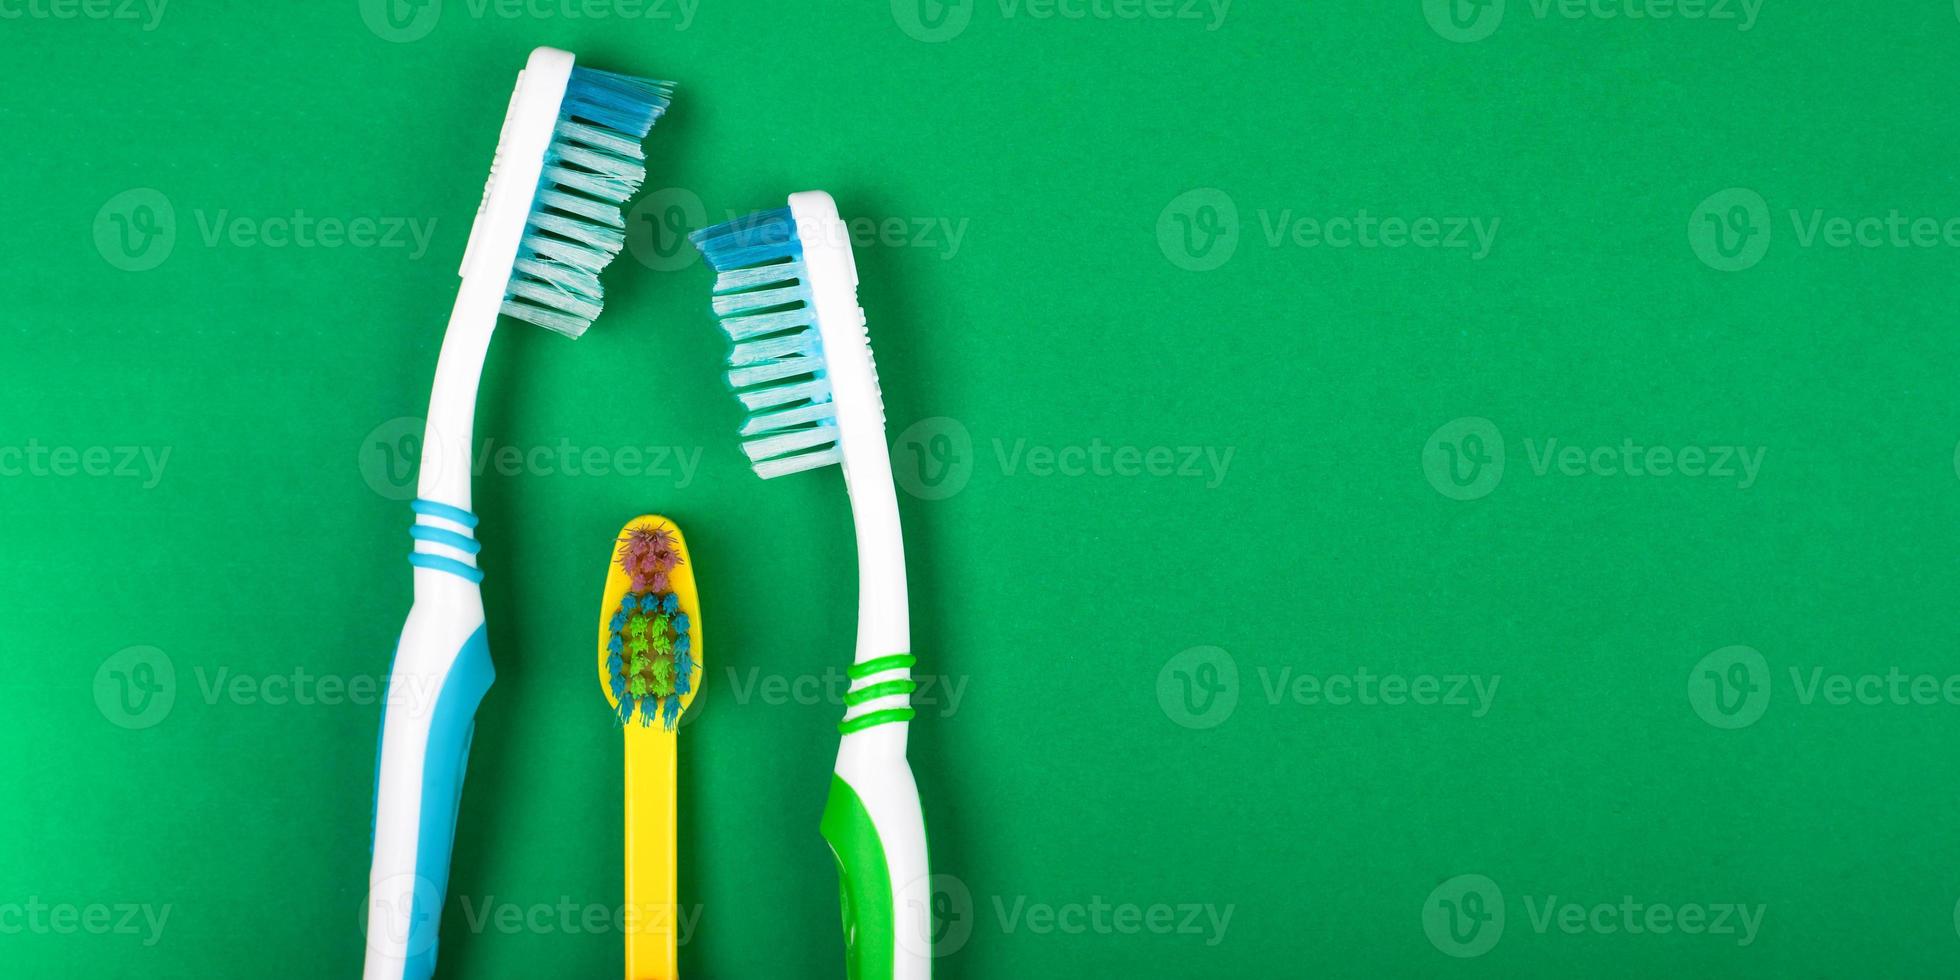 familj av tandborstar på en grön bakgrund foto